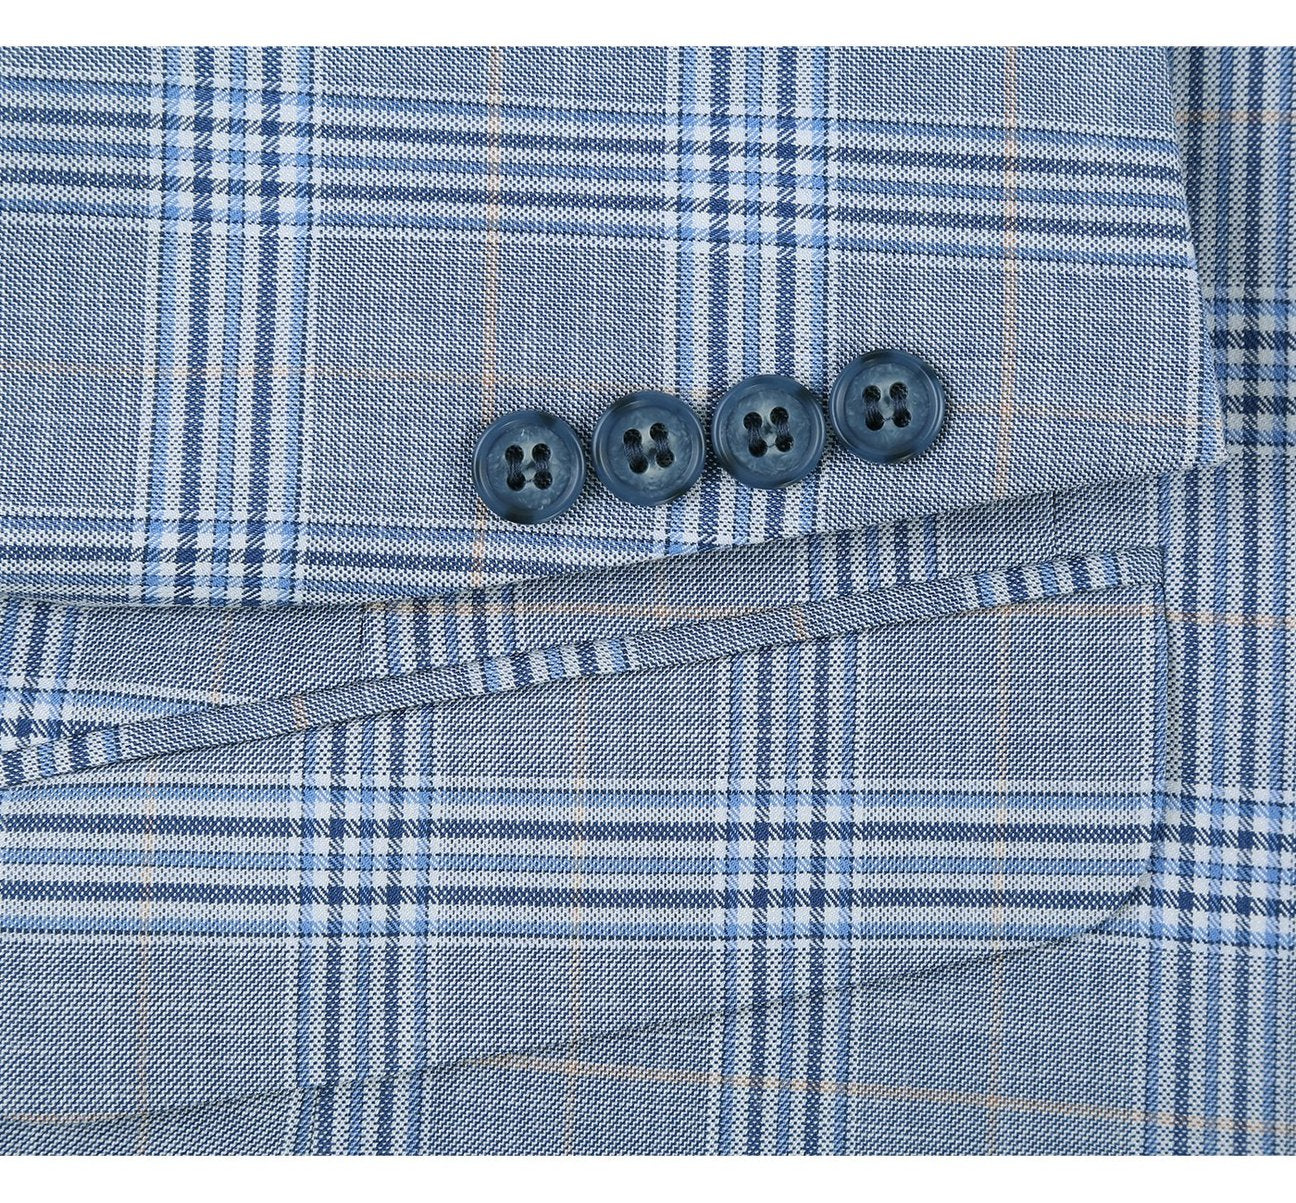 RENOIR Light Blue 2-Piece Slim Fit Notch Lapel Stretch Windowpane Suit 293-3